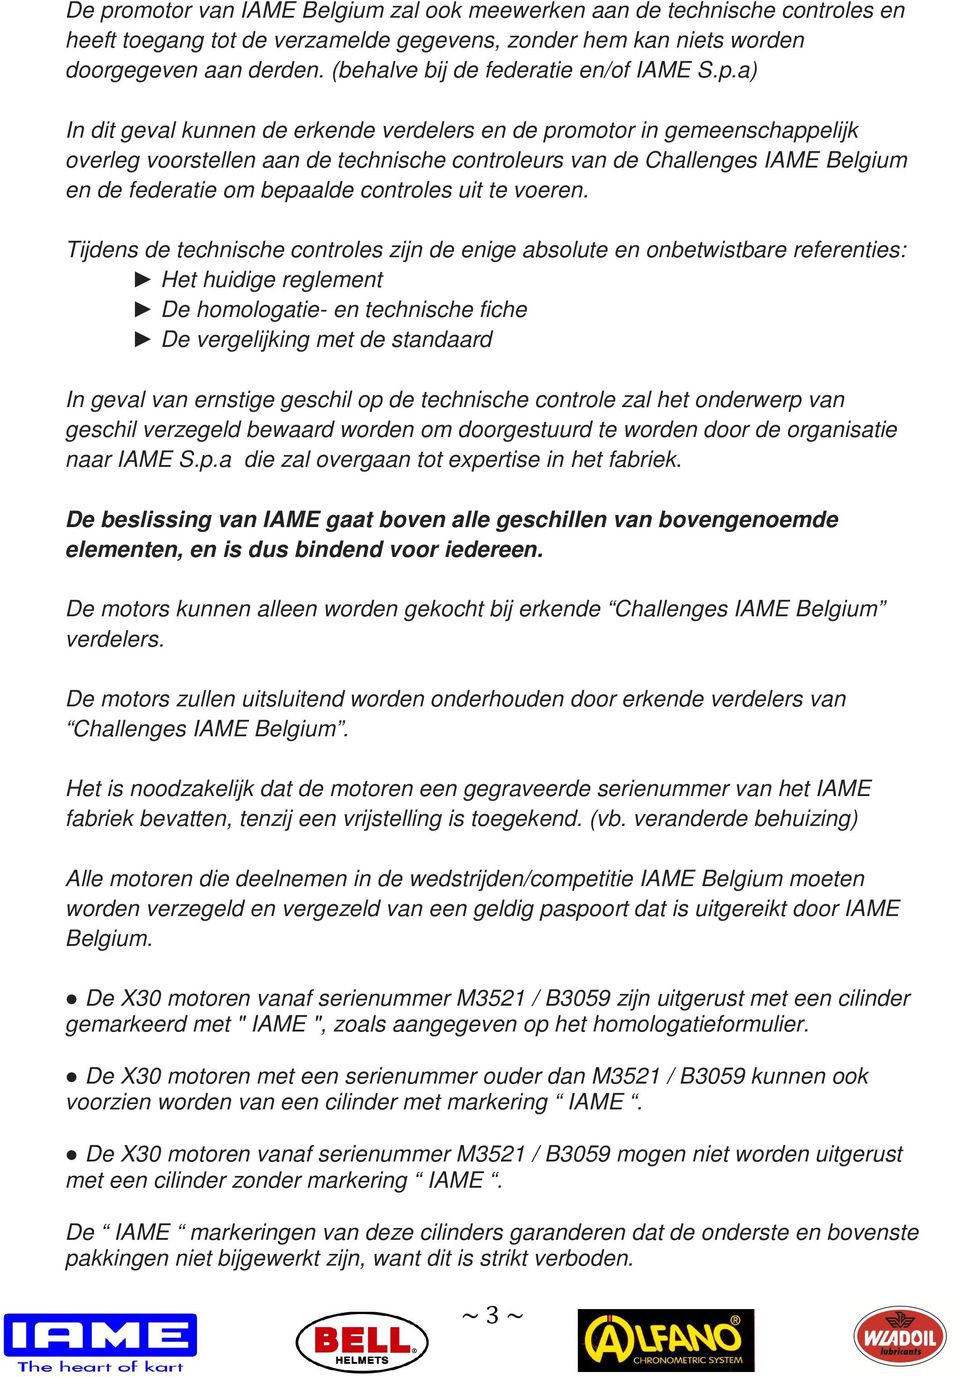 a) In dit geval kunnen de erkende verdelers en de promotor in gemeenschappelijk overleg voorstellen aan de technische controleurs van de Challenges IAME Belgium en de federatie om bepaalde controles